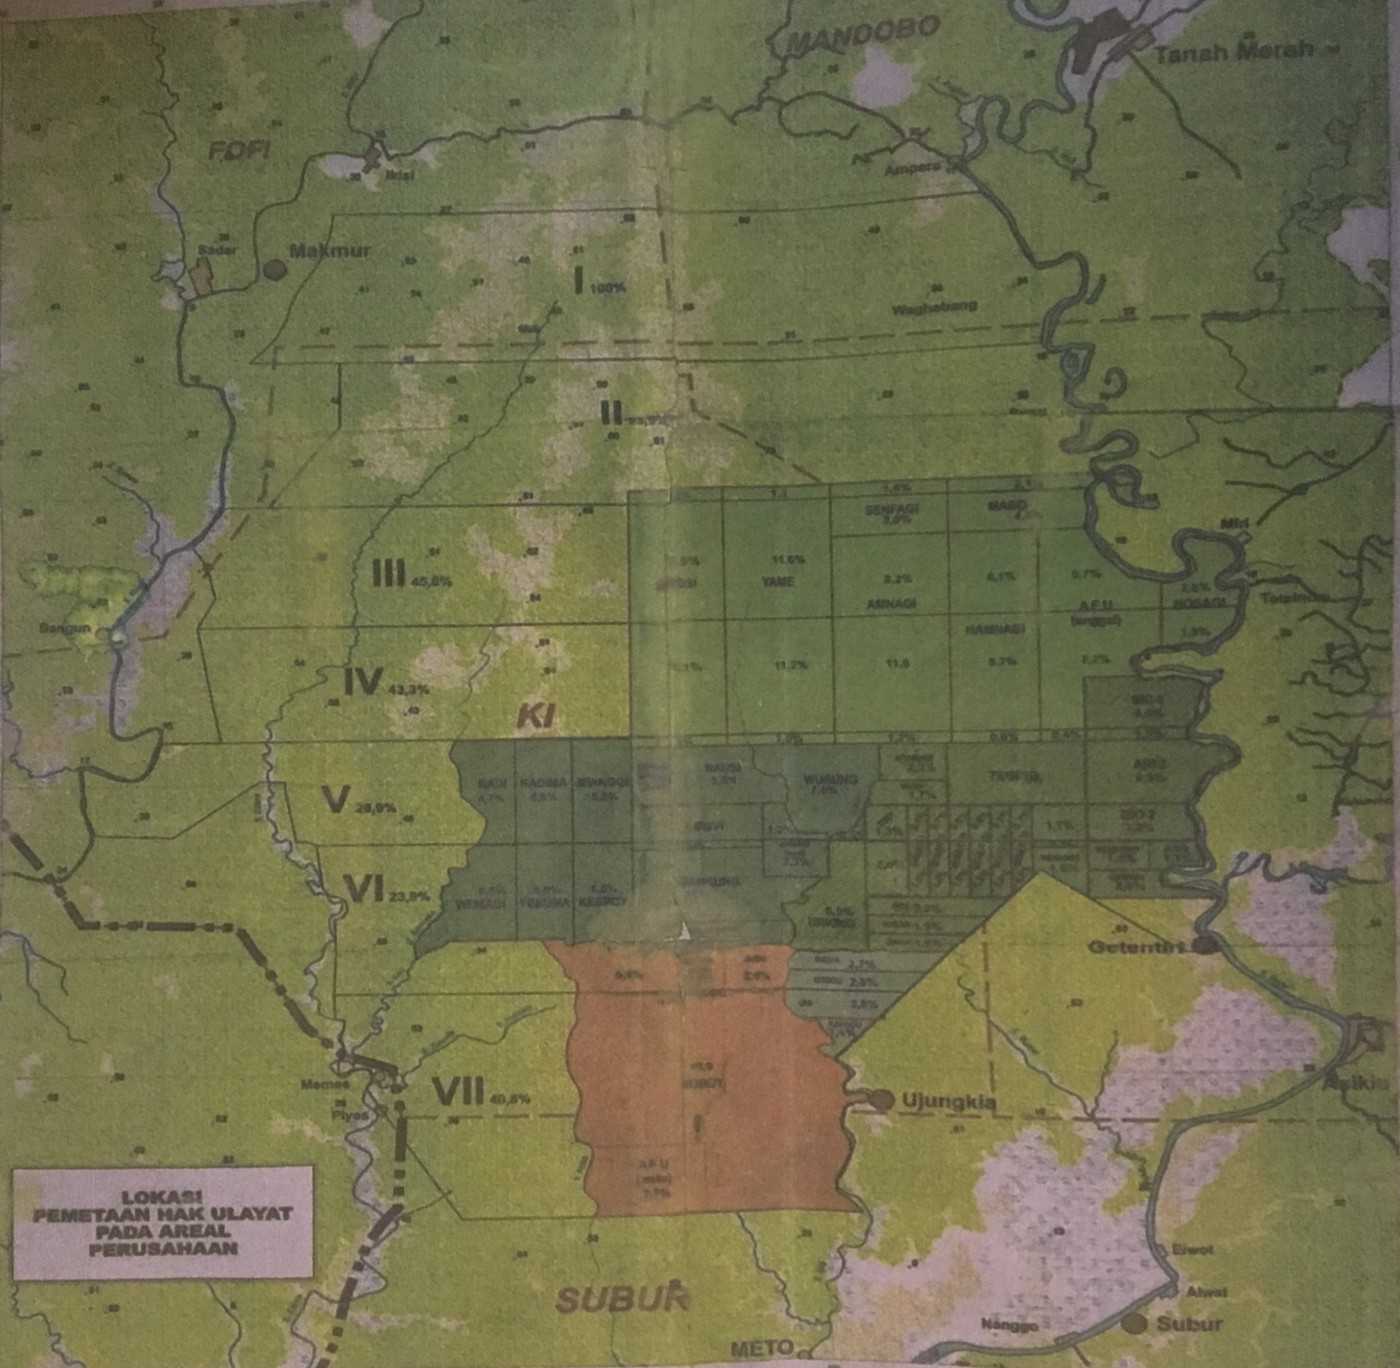 Peta wilayah tanah adat dalam proyek Tanah Merah, Boven Digoel, menurut perusahaan